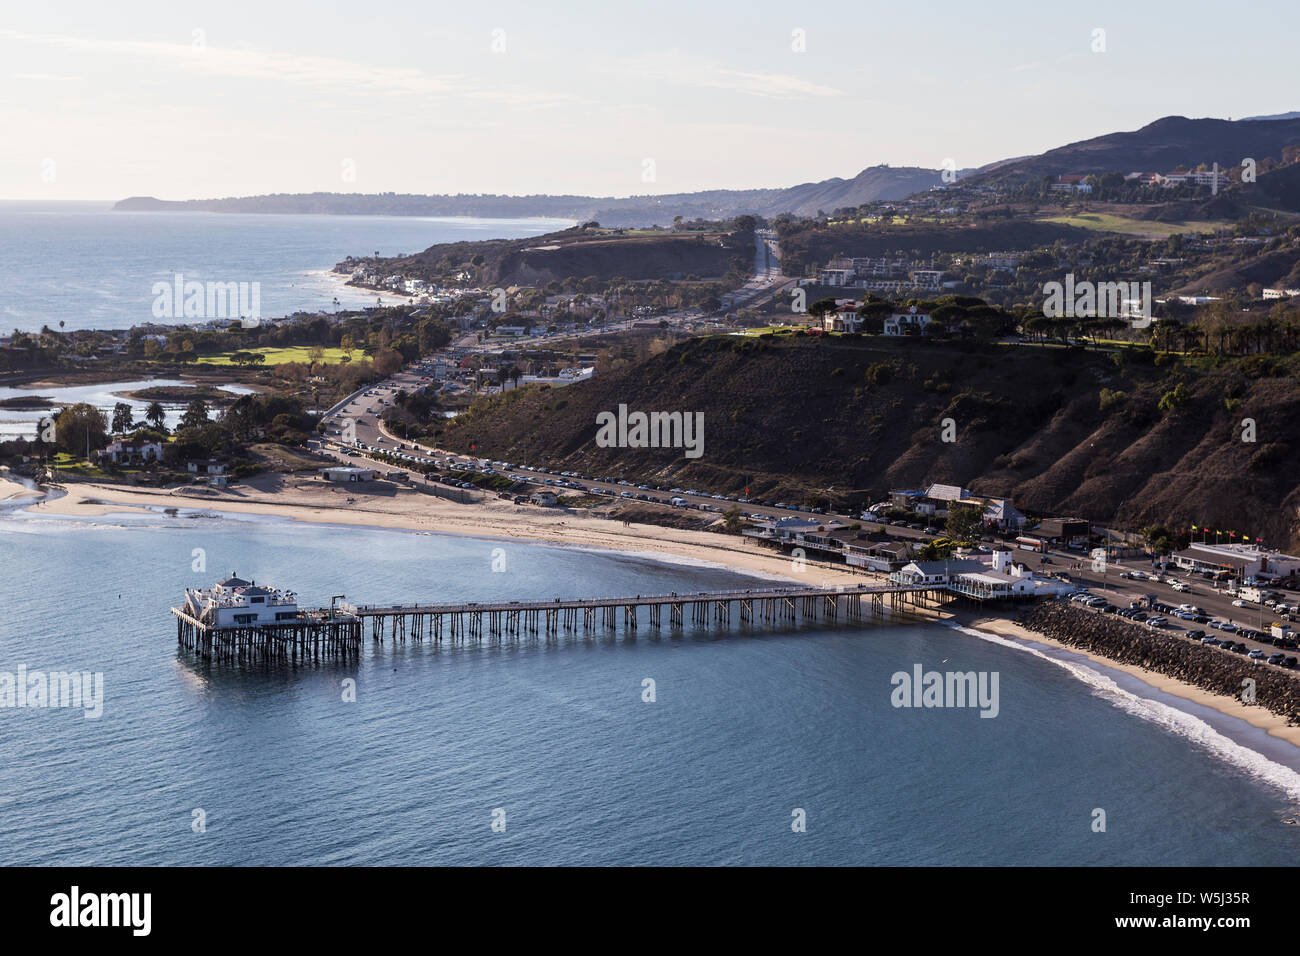 Historique Vue aérienne de Malibu Pier, Pacific Coast Highway et la montagnes de Santa Monica, près de Los Angeles en Californie du Sud. Banque D'Images